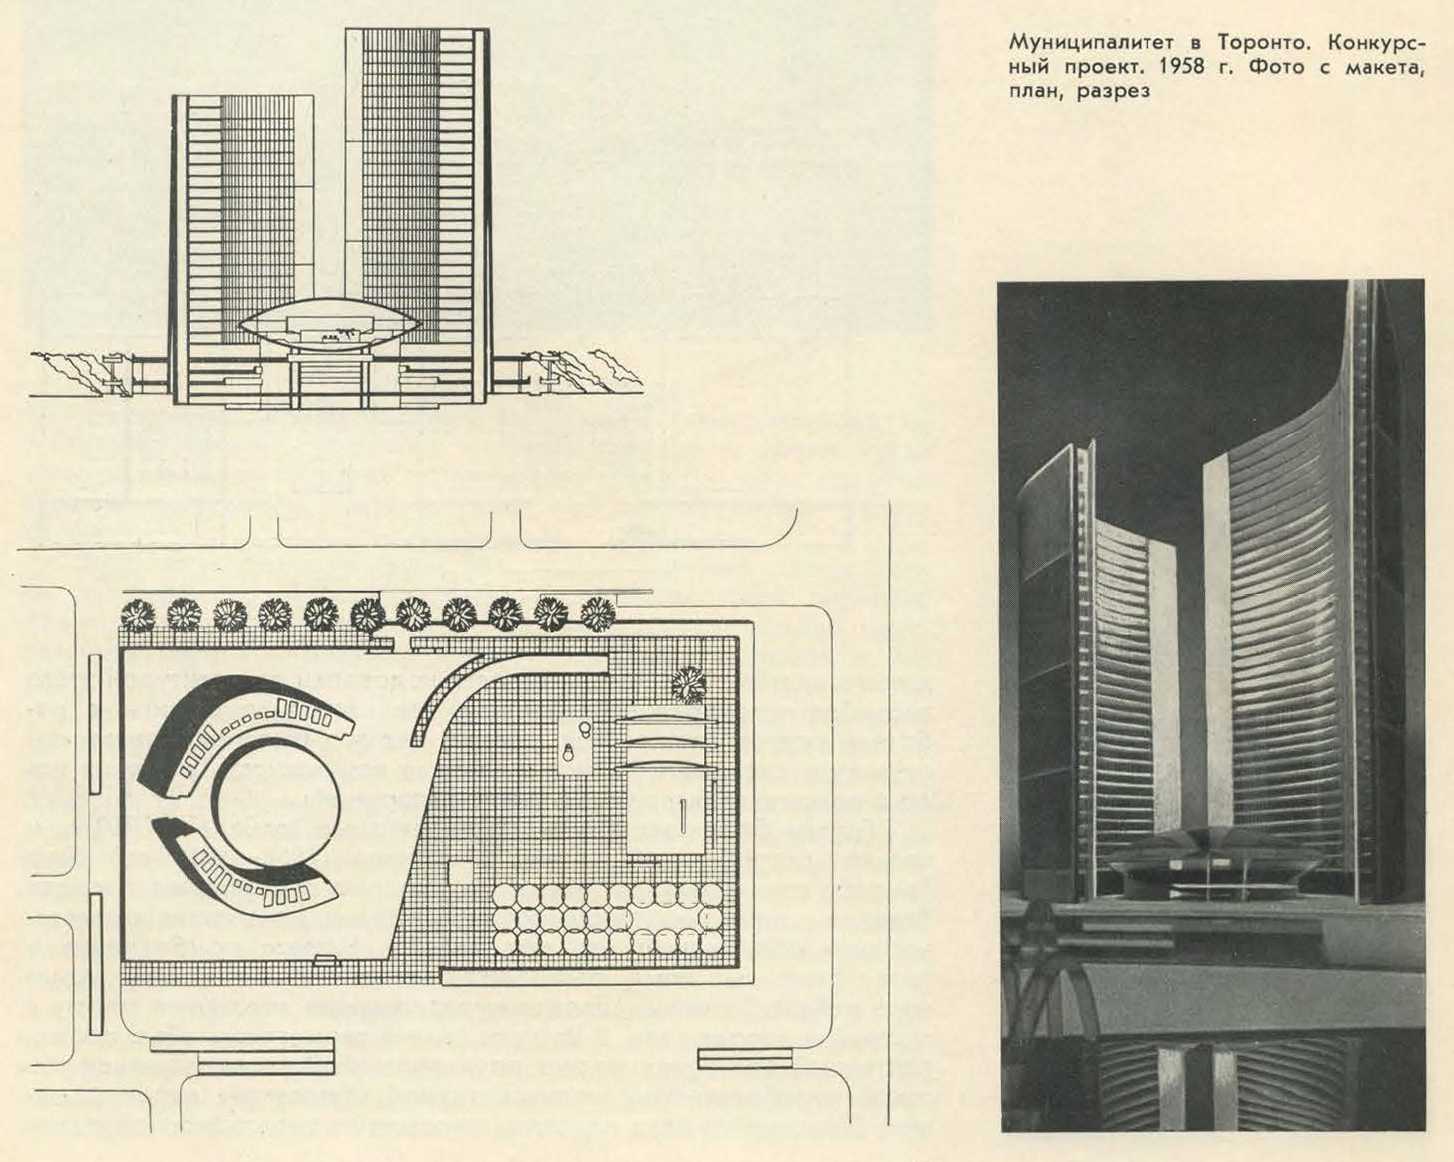 Муниципалитет в Торонто. Конкурсный проект. 1958 г. Фото с макета, план, разрез